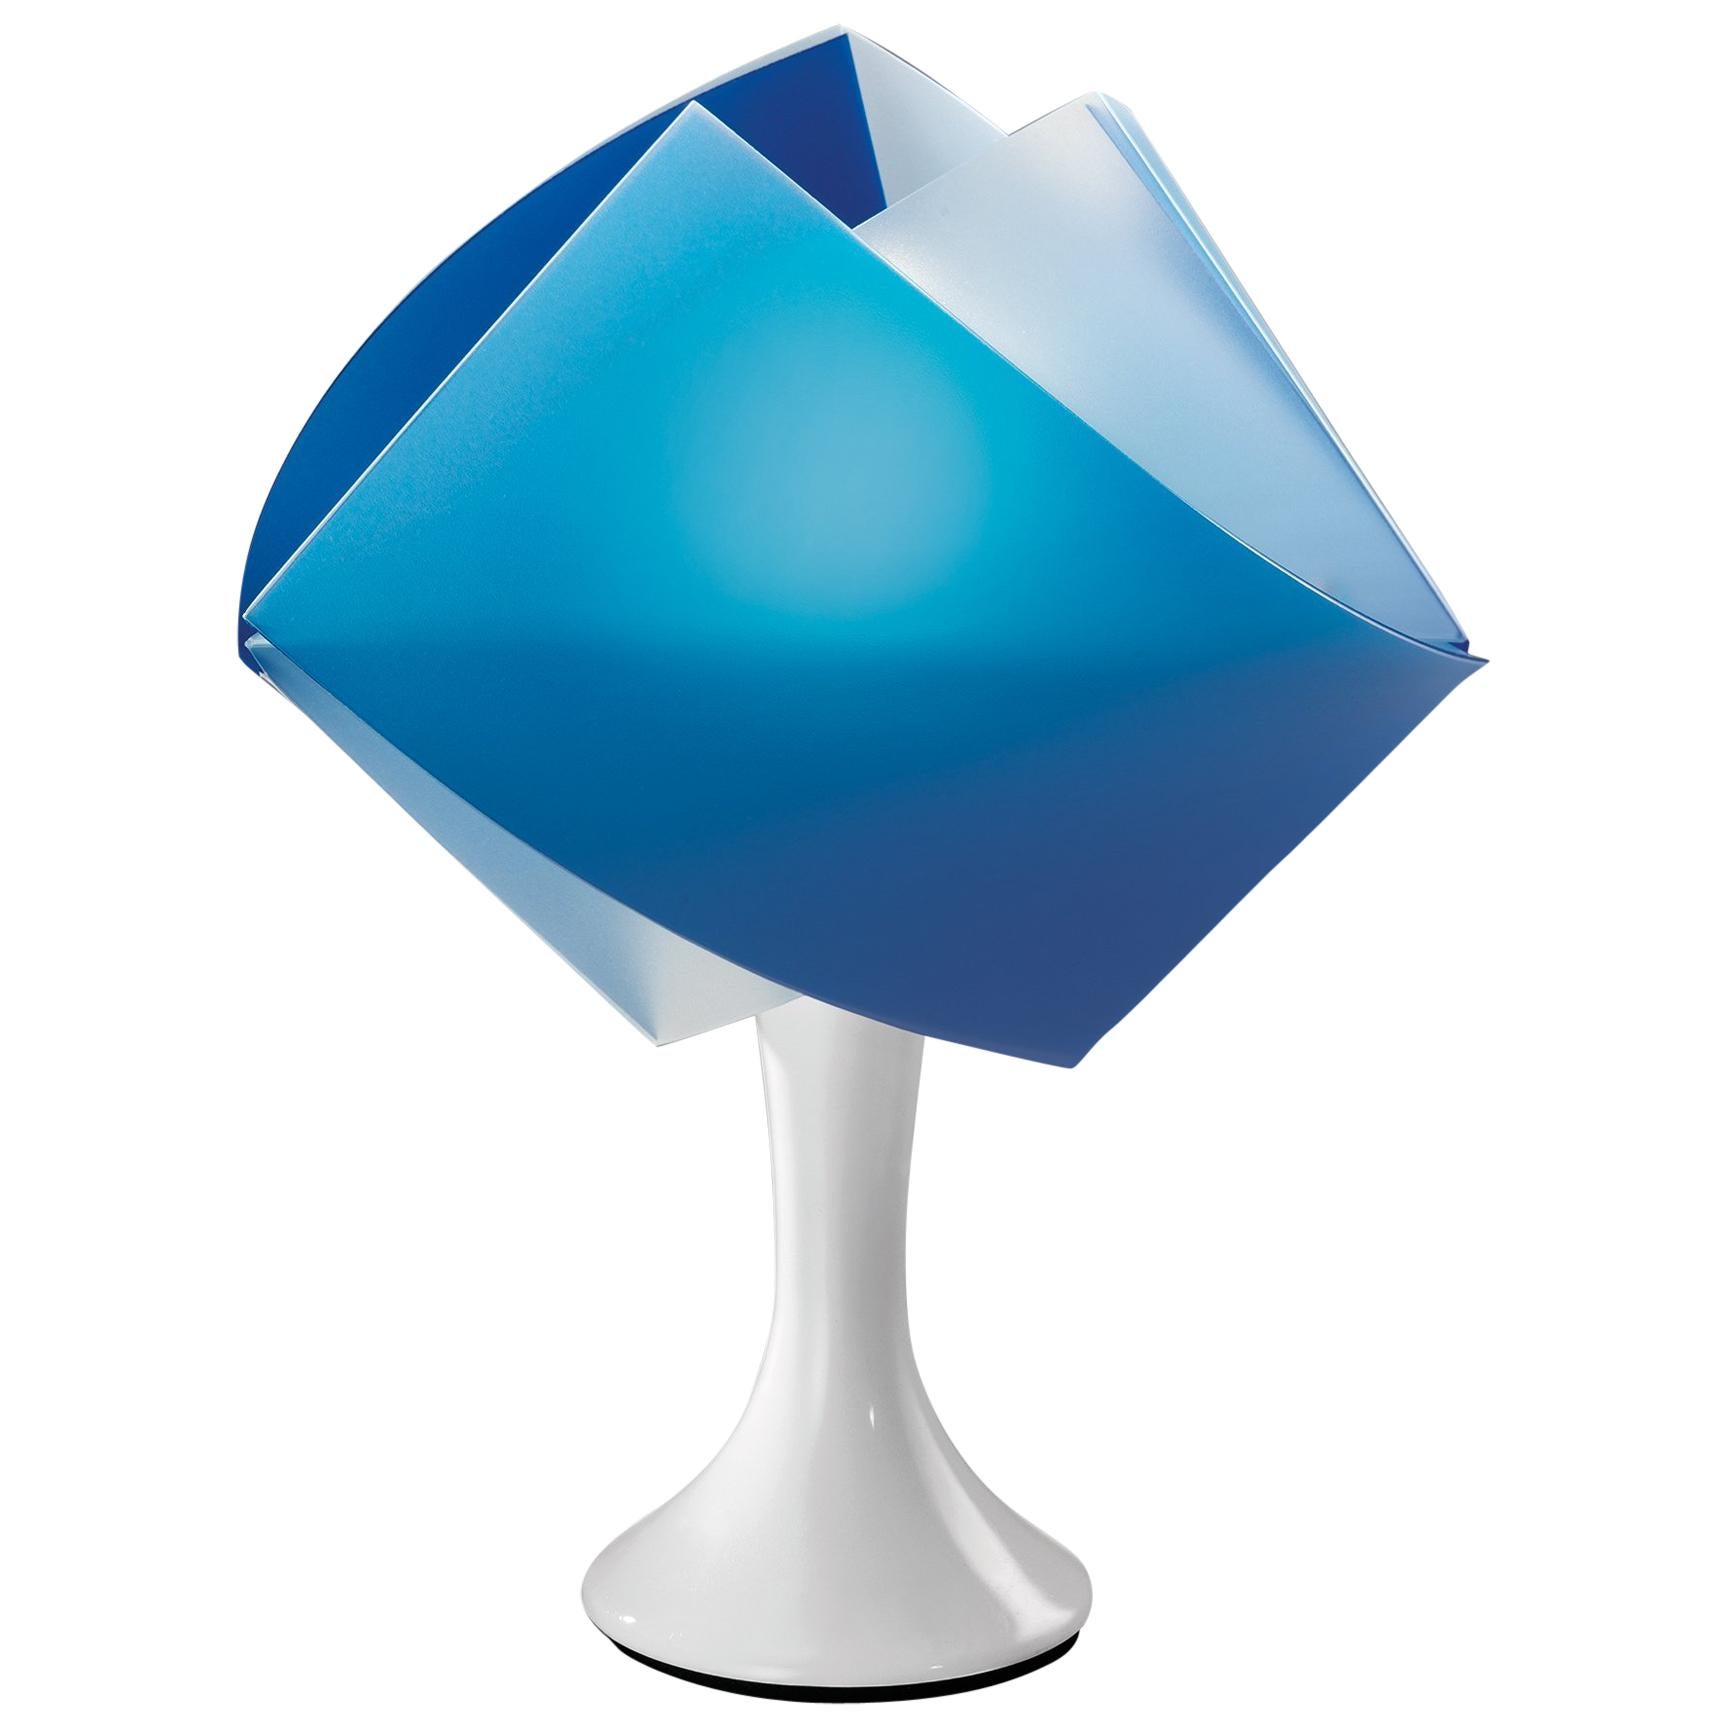 Slamp Gemmy Table Light in Blue by Spalletta, Croce, Ragnisco & Wijffels For Sale